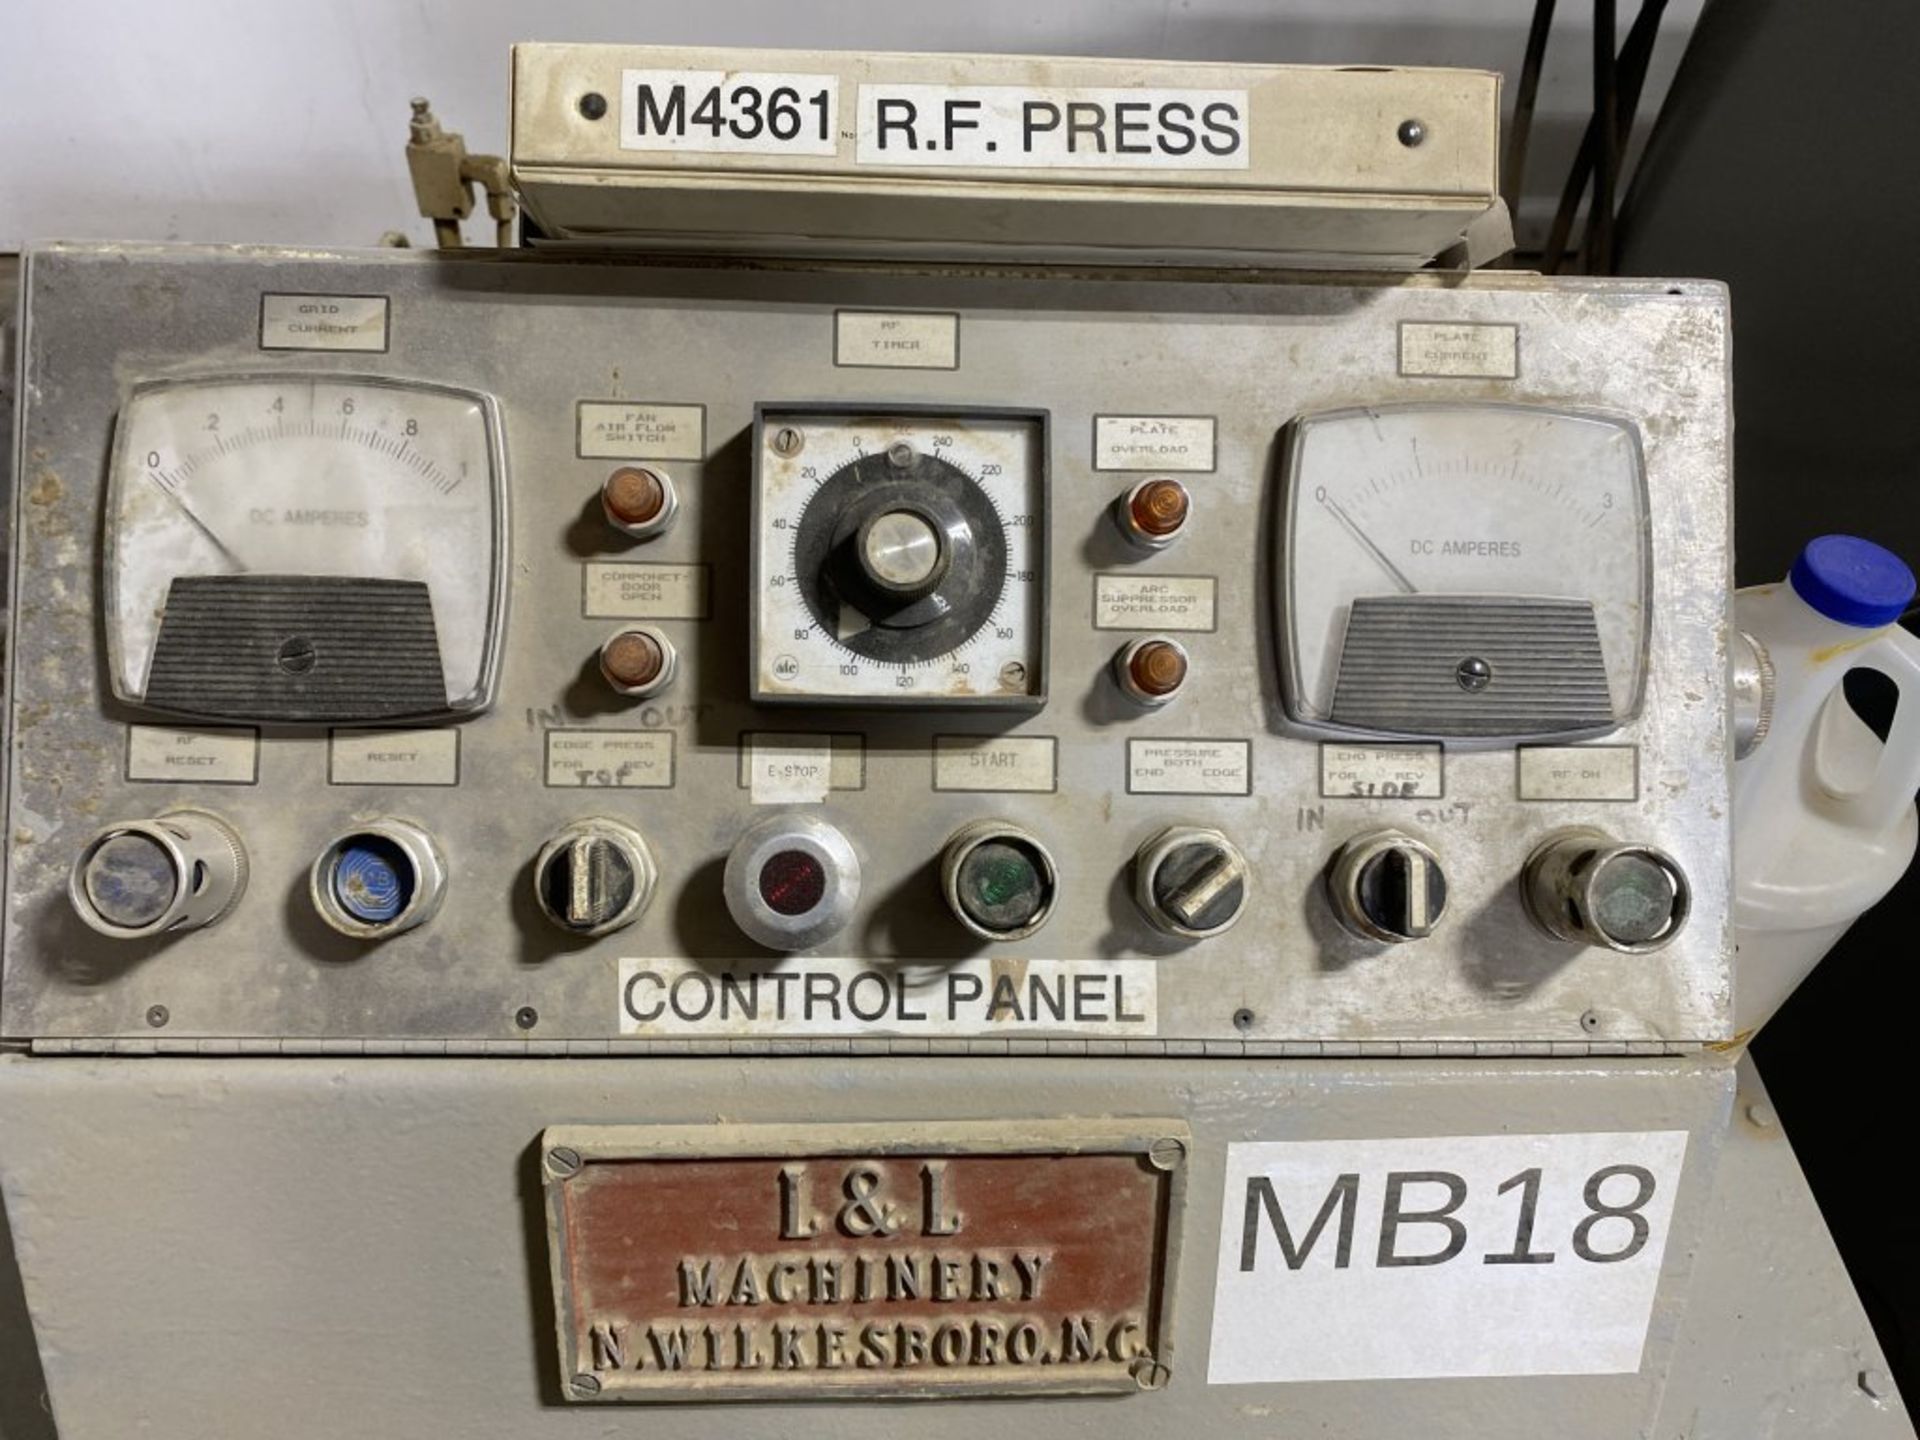 L&L MACHINERY DU-ALL M4361 RING PRESS, MODEL DA-80, 3-PHASE, 440V, S/N: 87-803 - Bild 7 aus 14